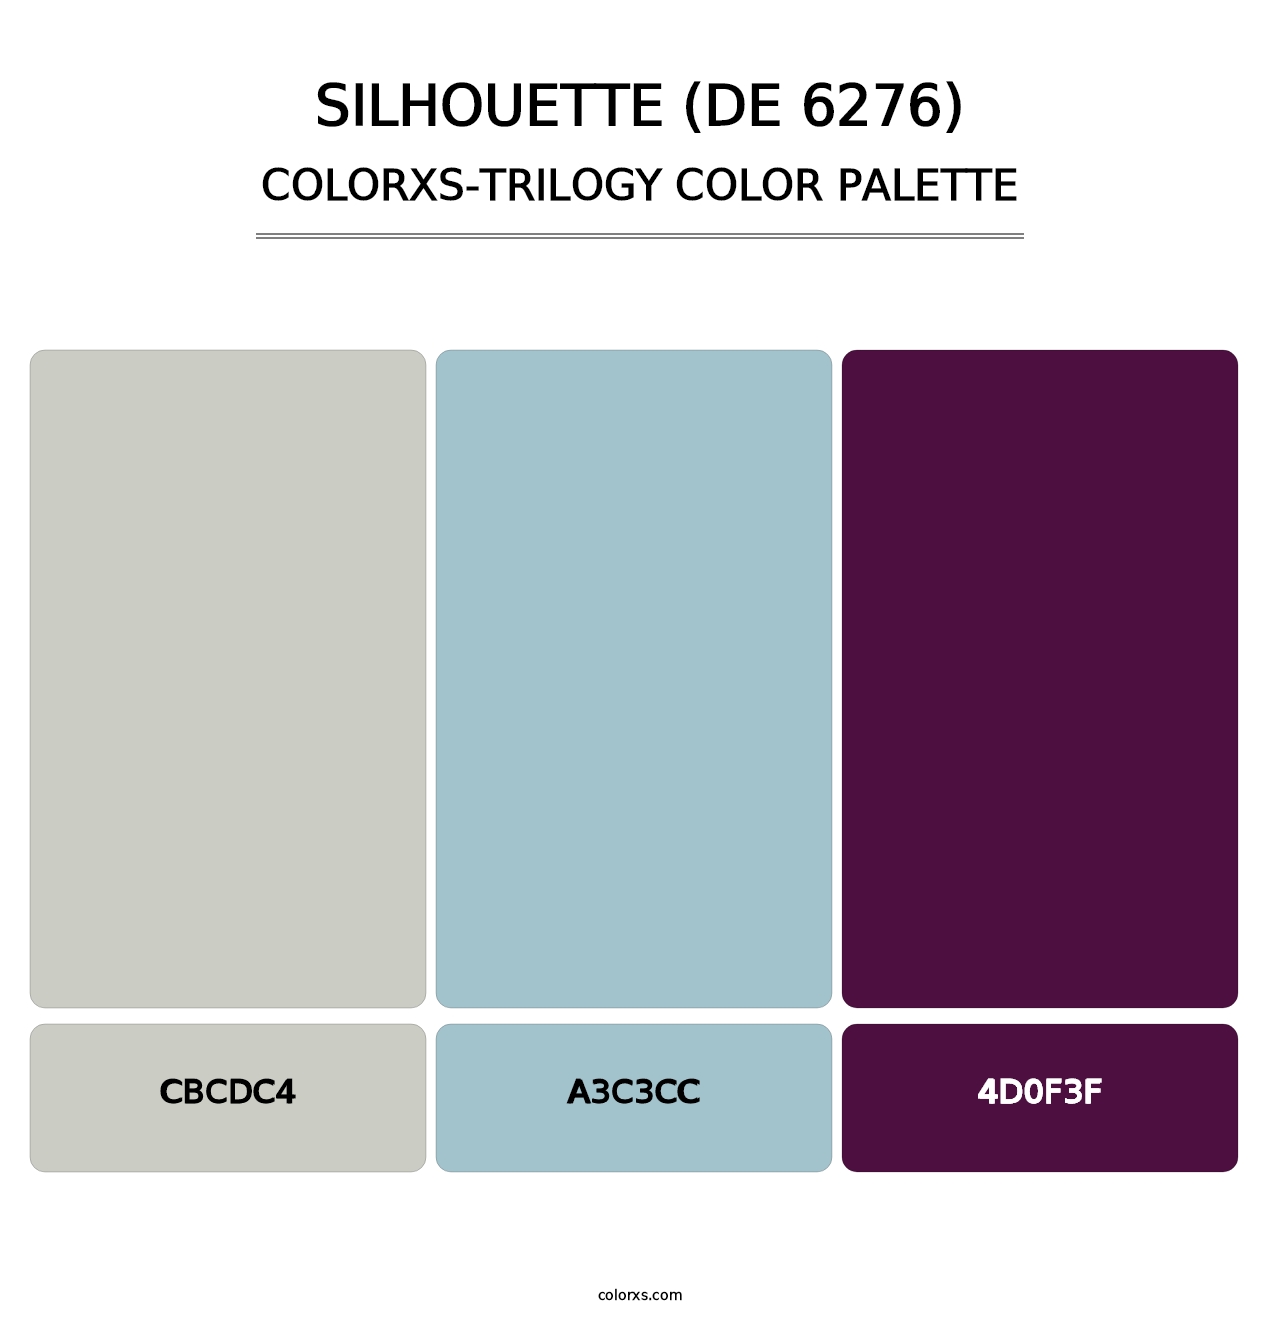 Silhouette (DE 6276) - Colorxs Trilogy Palette